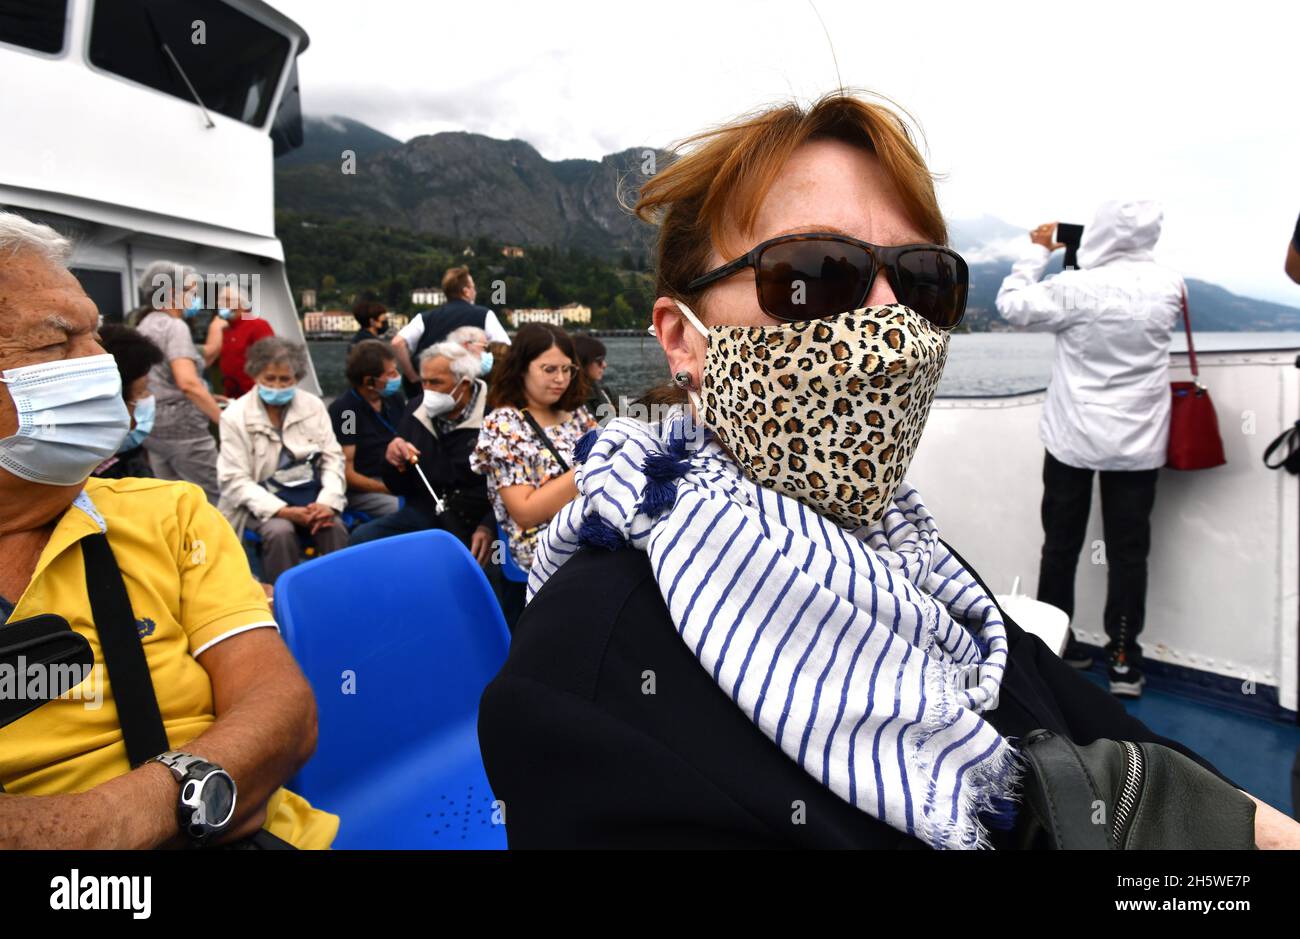 Passeggeri turisti che indossano le maschere facciali del virus Covid 19 sul battello passeggeri del lago di Como in Italia 2021 Foto Stock